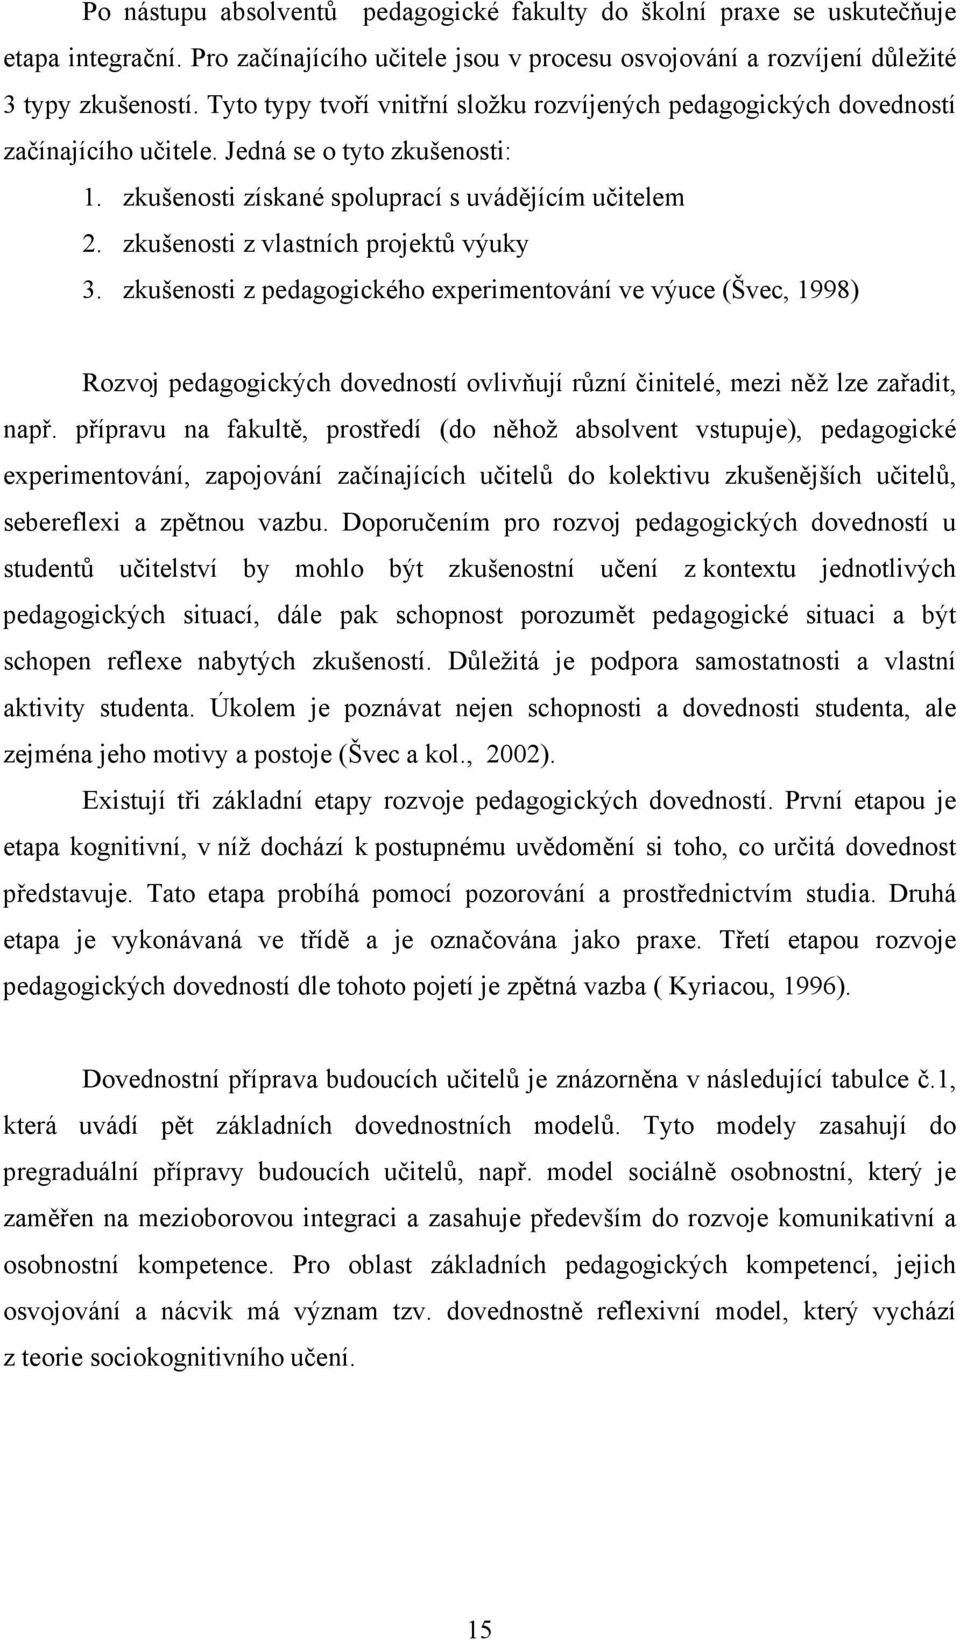 zkušenosti z vlastních projektů výuky 3. zkušenosti z pedagogického experimentování ve výuce (Švec, 1998) Rozvoj pedagogických dovedností ovlivňují různí činitelé, mezi něž lze zařadit, např.